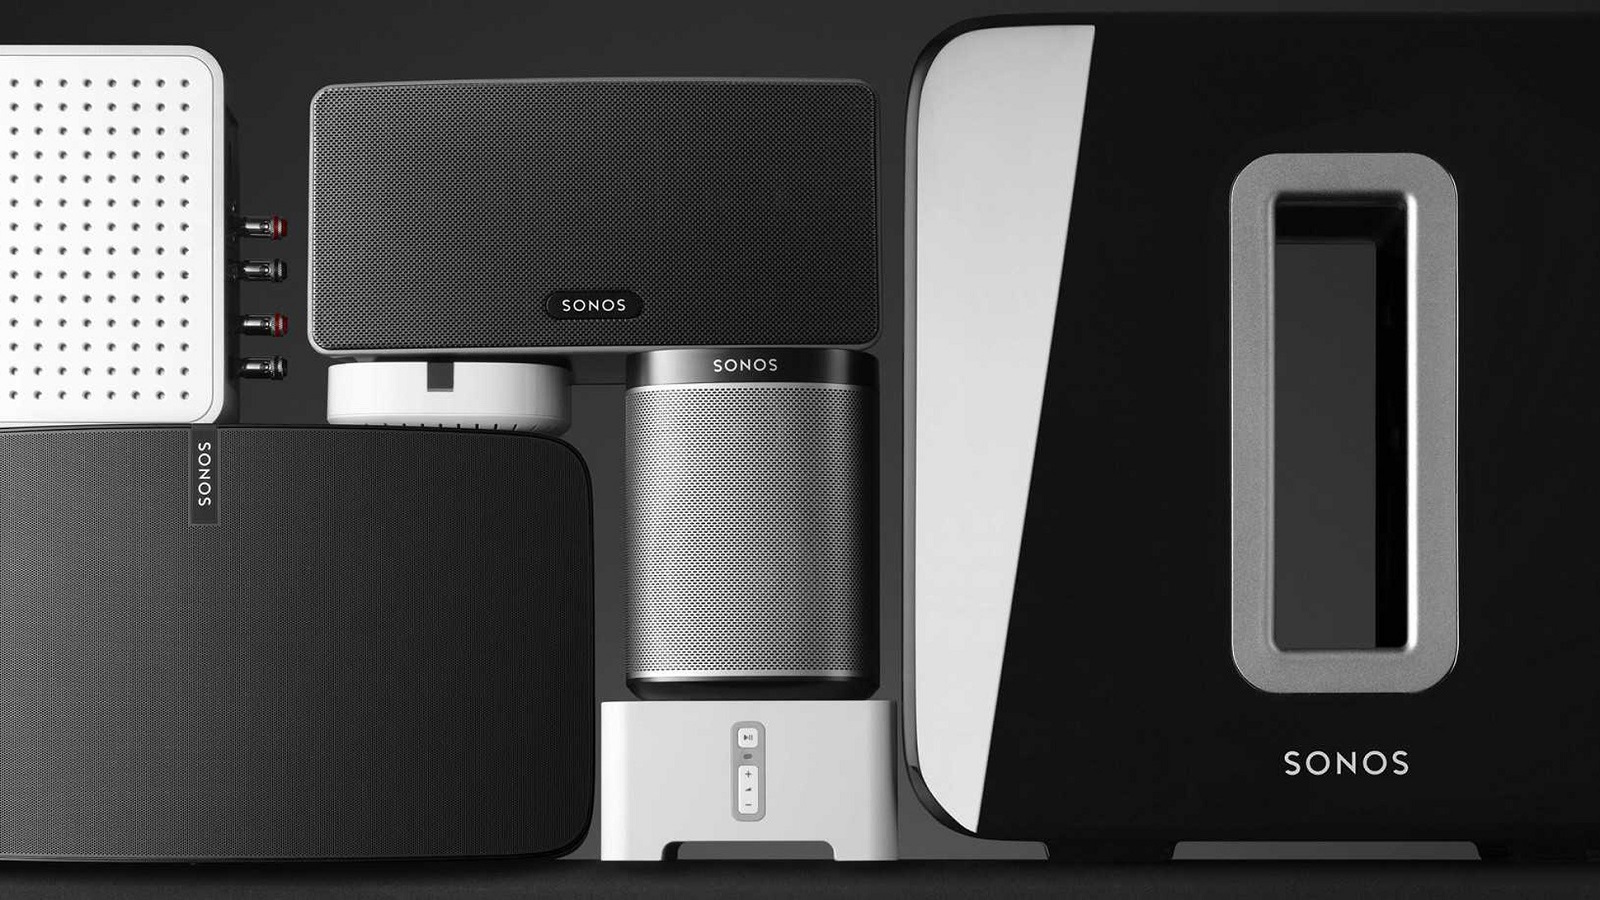 menneskelige ressourcer komprimeret forbrug 9 Best Sonos Alternatives 2019: Smart Speakers our Homes Truly Want